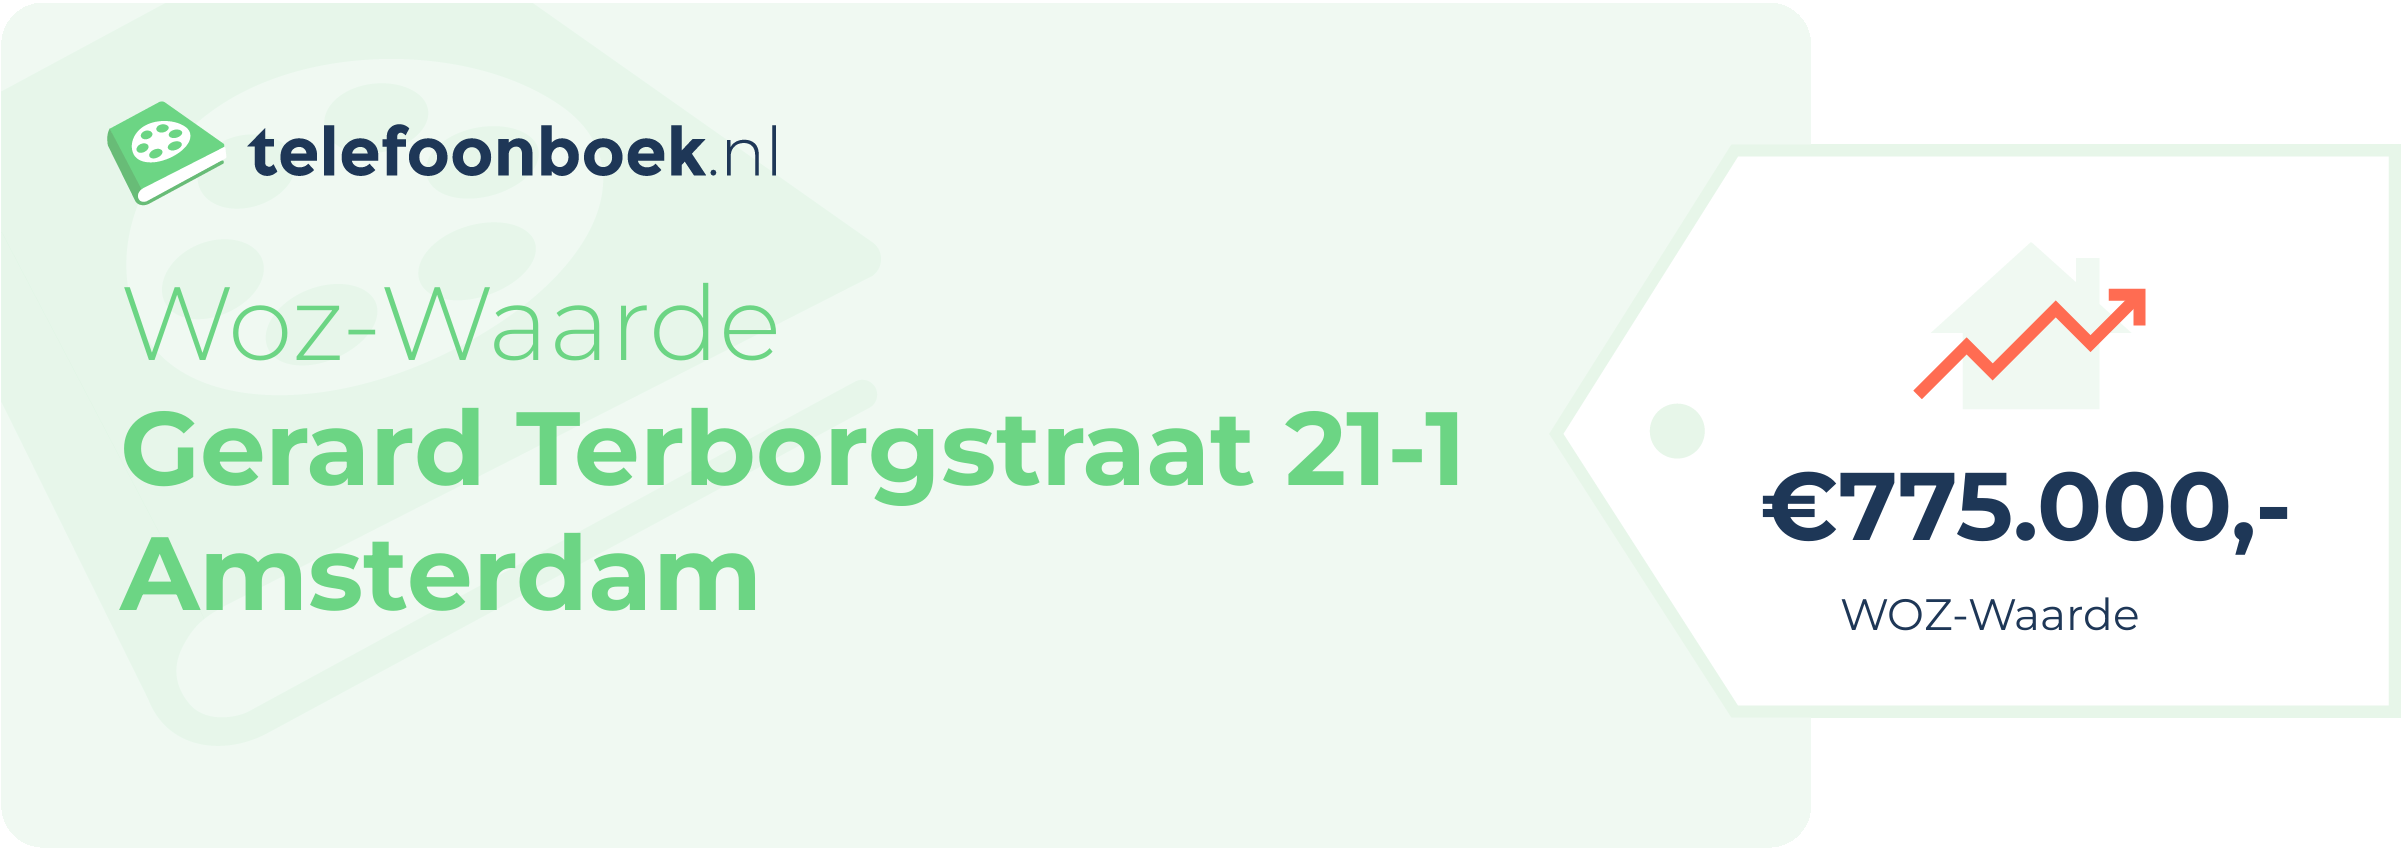 WOZ-waarde Gerard Terborgstraat 21-1 Amsterdam